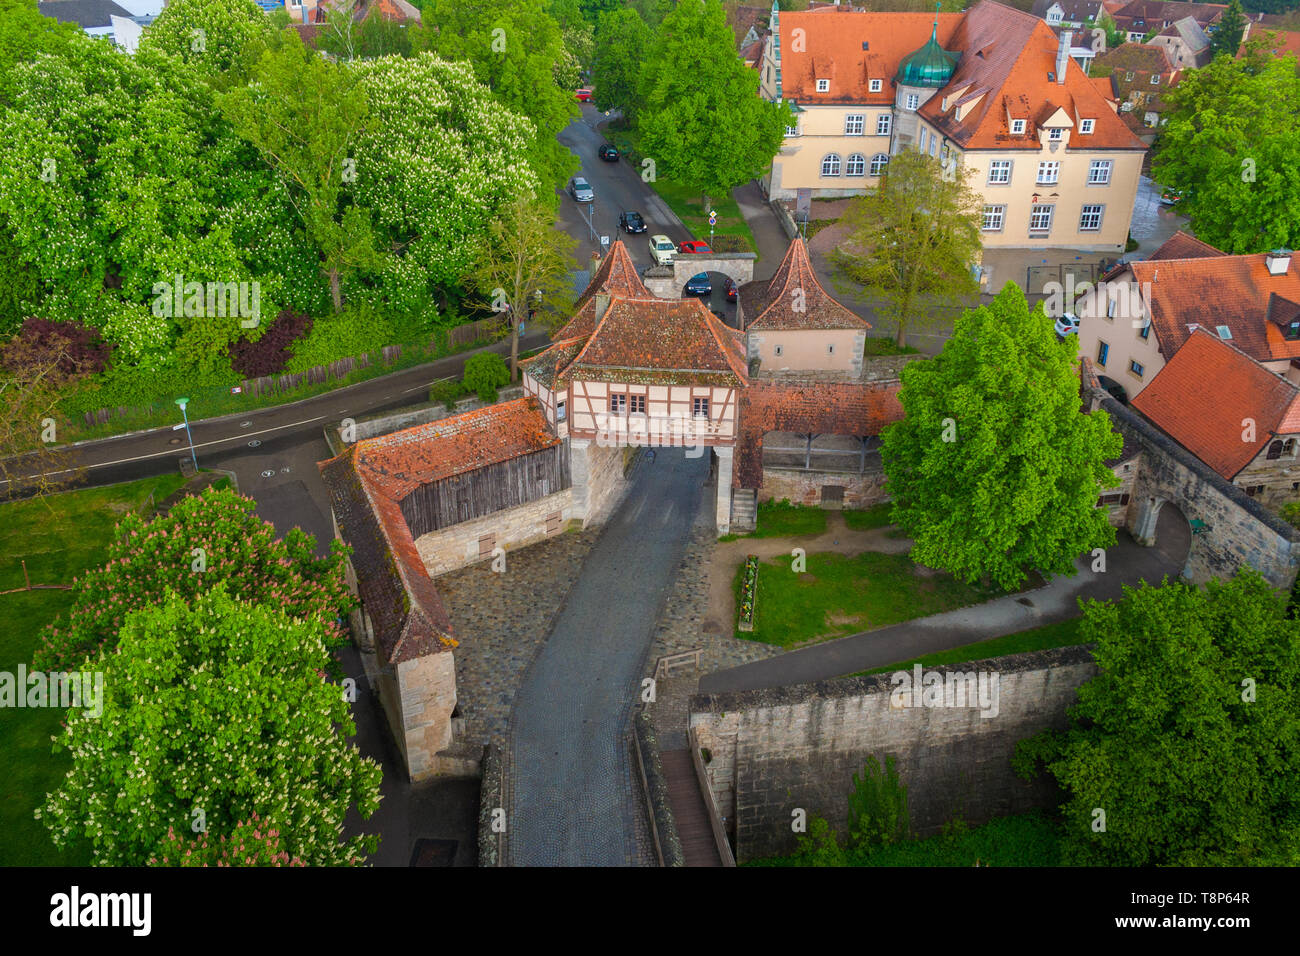 Schöne Luftaufnahme des befestigten Außenposten oder Gateway als äußere Verteidigung zu der mittelalterlichen Stadt Rothenburg o.d. Tauber in Deutschland. Der gepflasterten Straße... Stockfoto